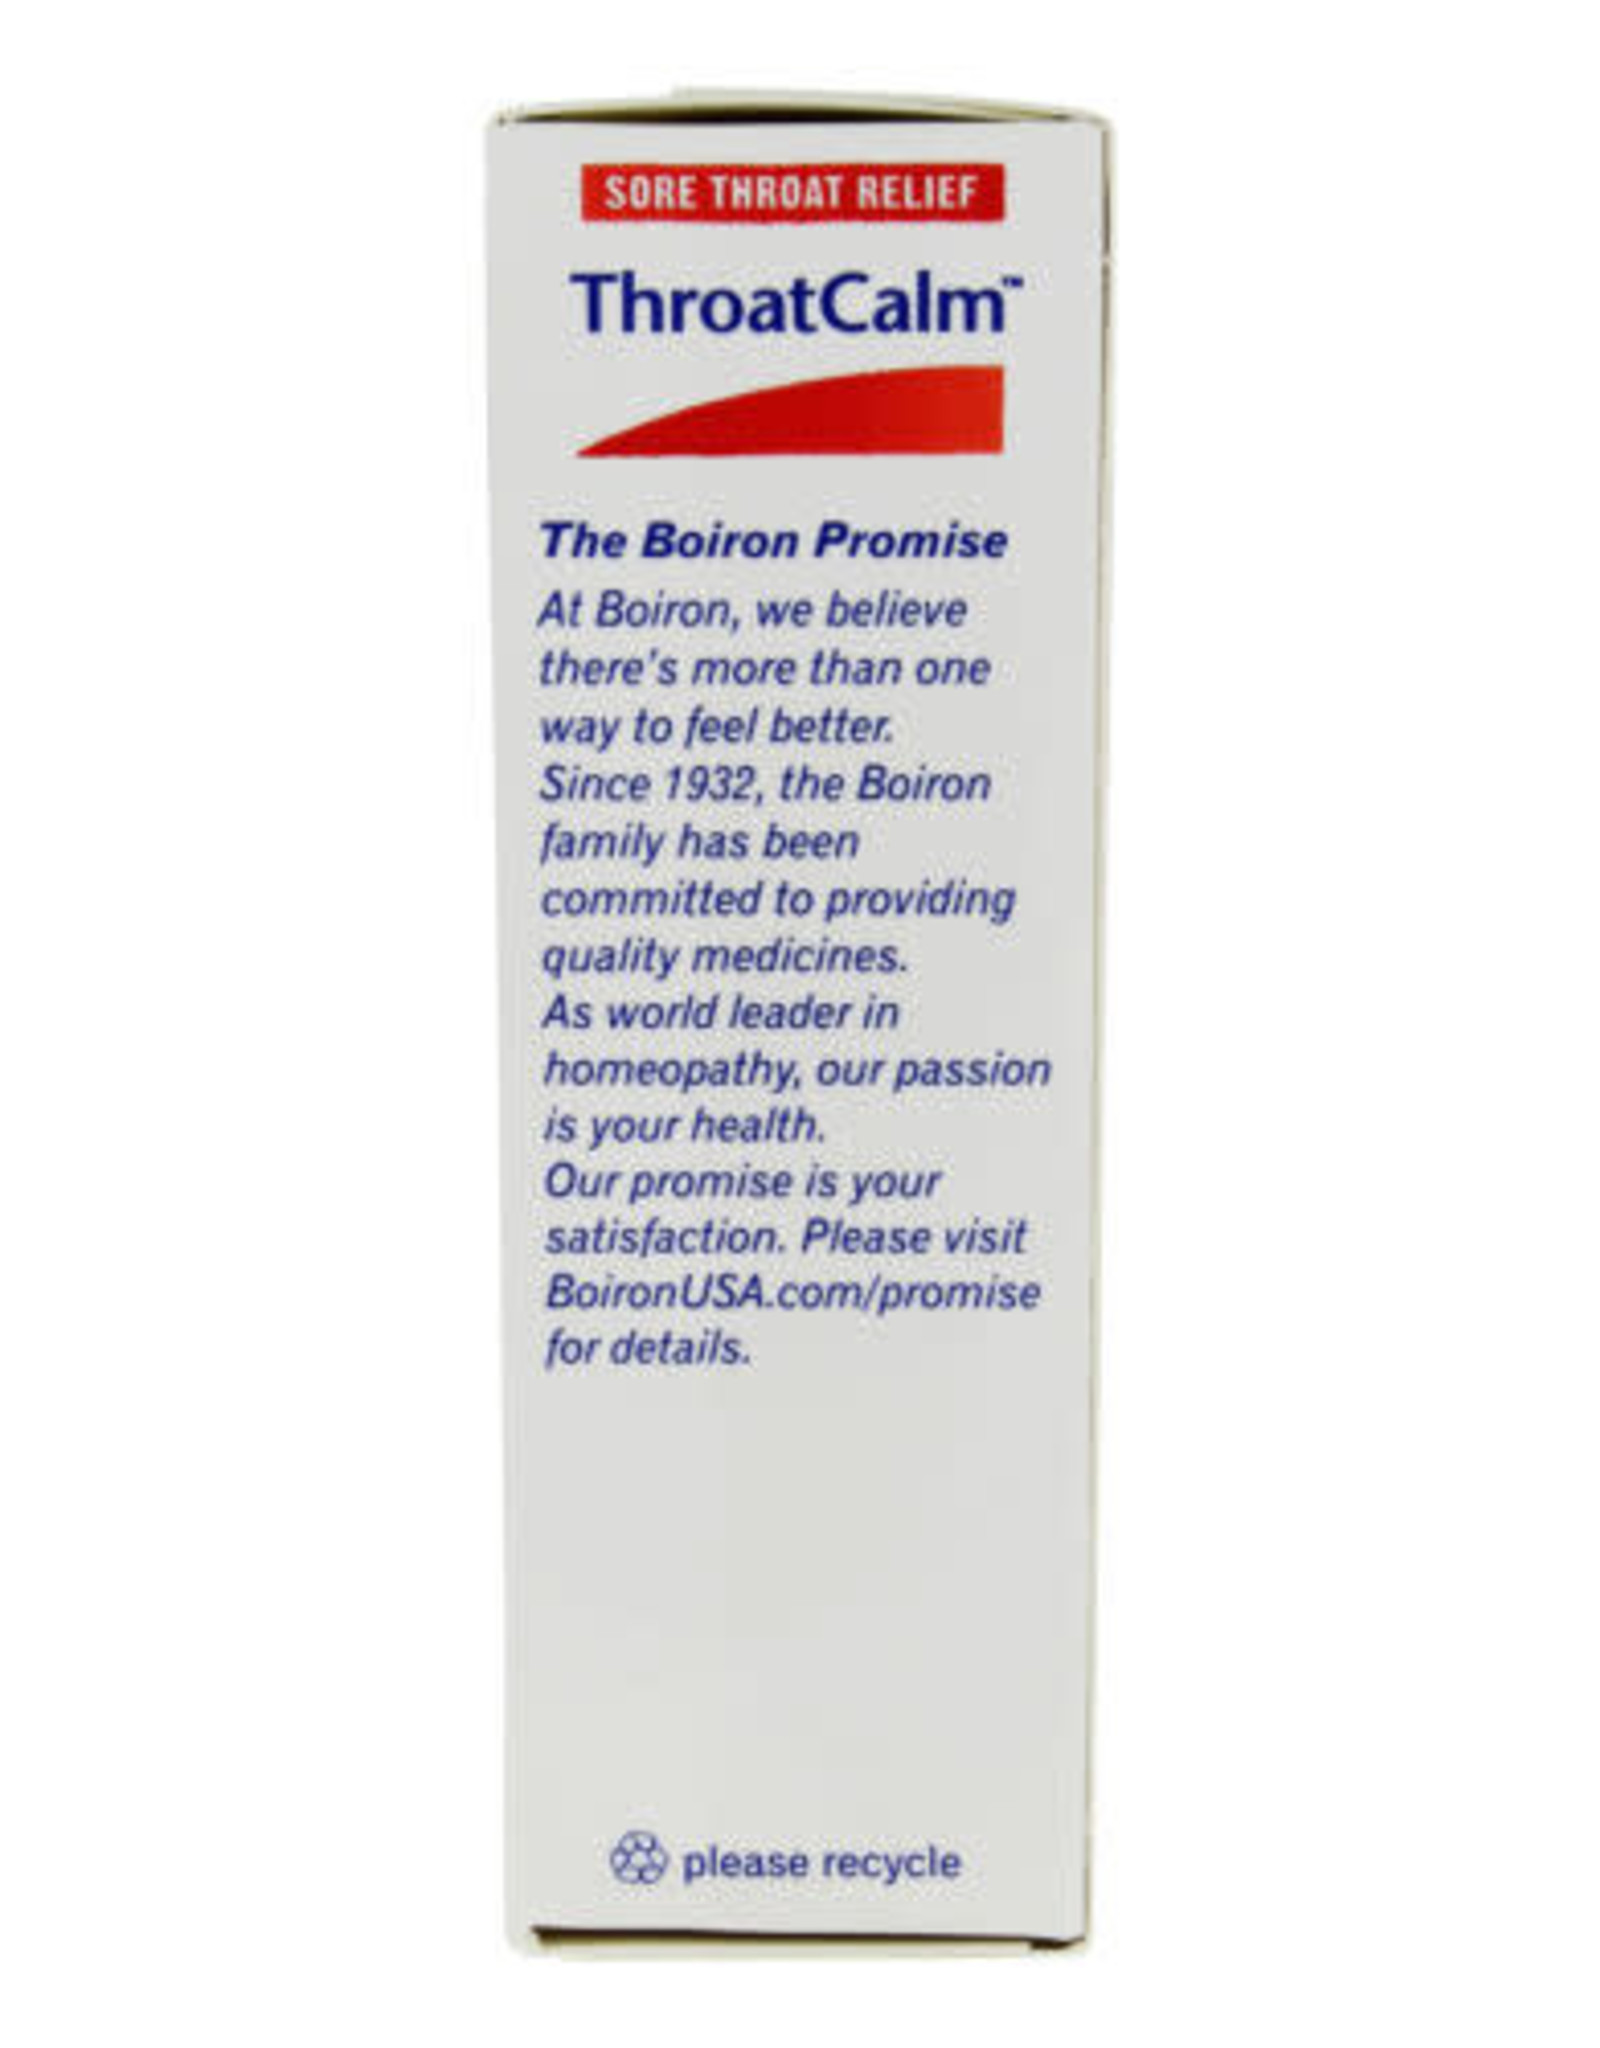 X Boiron Throat Calm 60 tabs